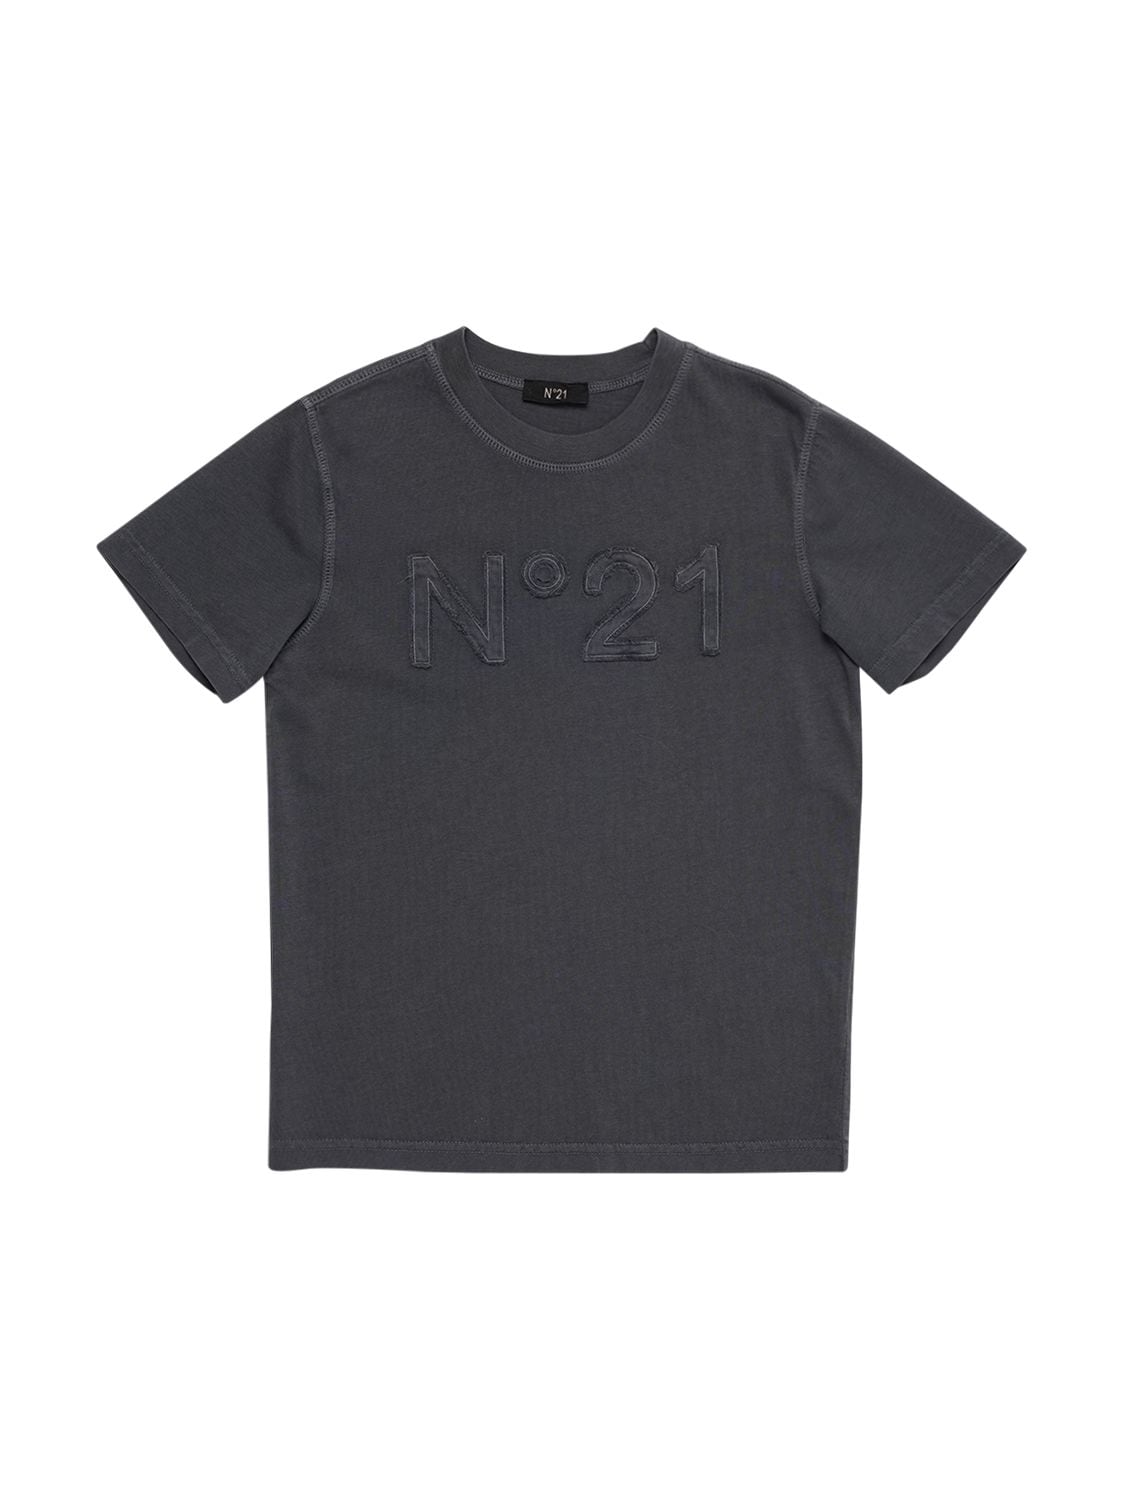 N°21 Kids' Cotton Jersey T-shirt W/ Logo Patch In Dark Grey